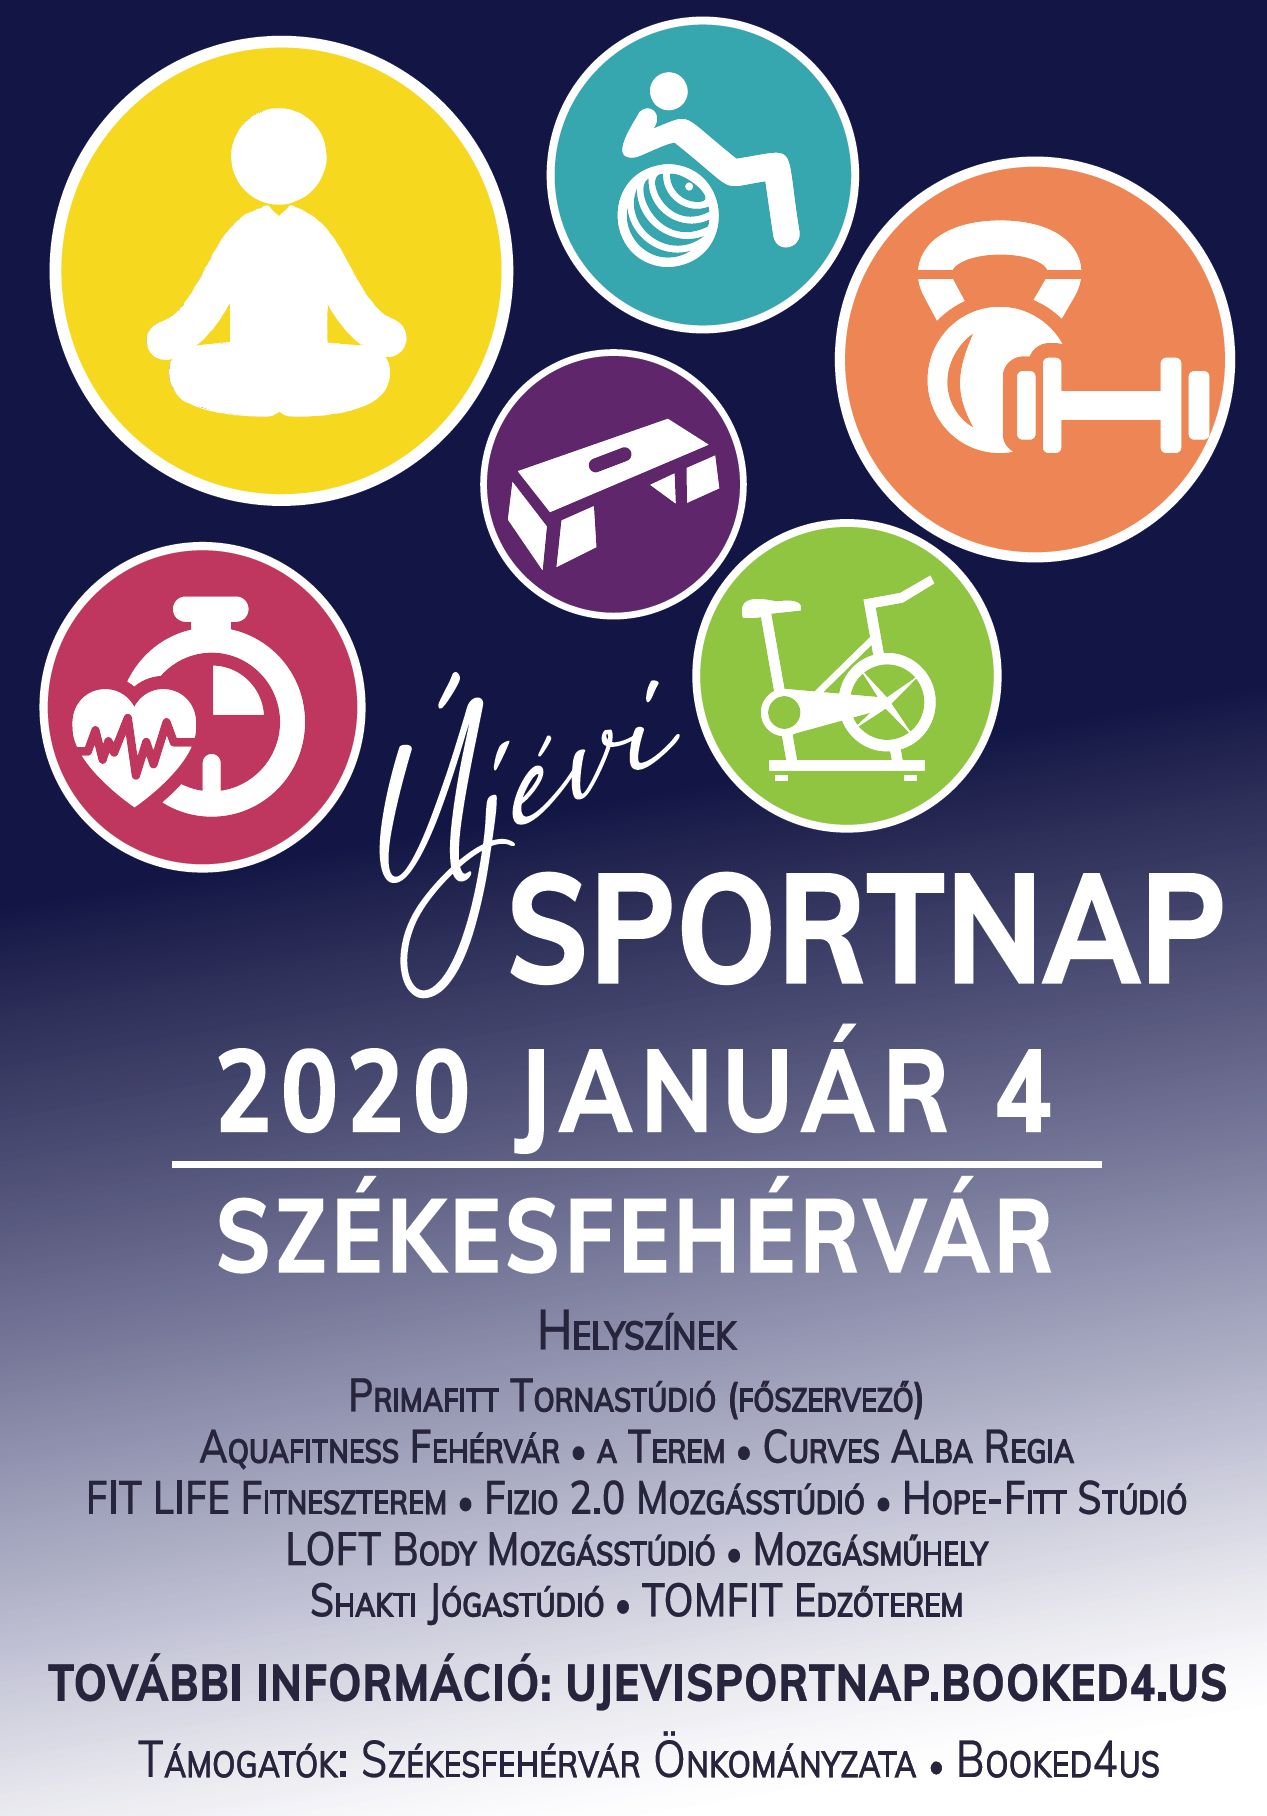 Tucatnyi sportlétesítményben mozoghatunk ingyen a január 4-i Újévi Sportnapon